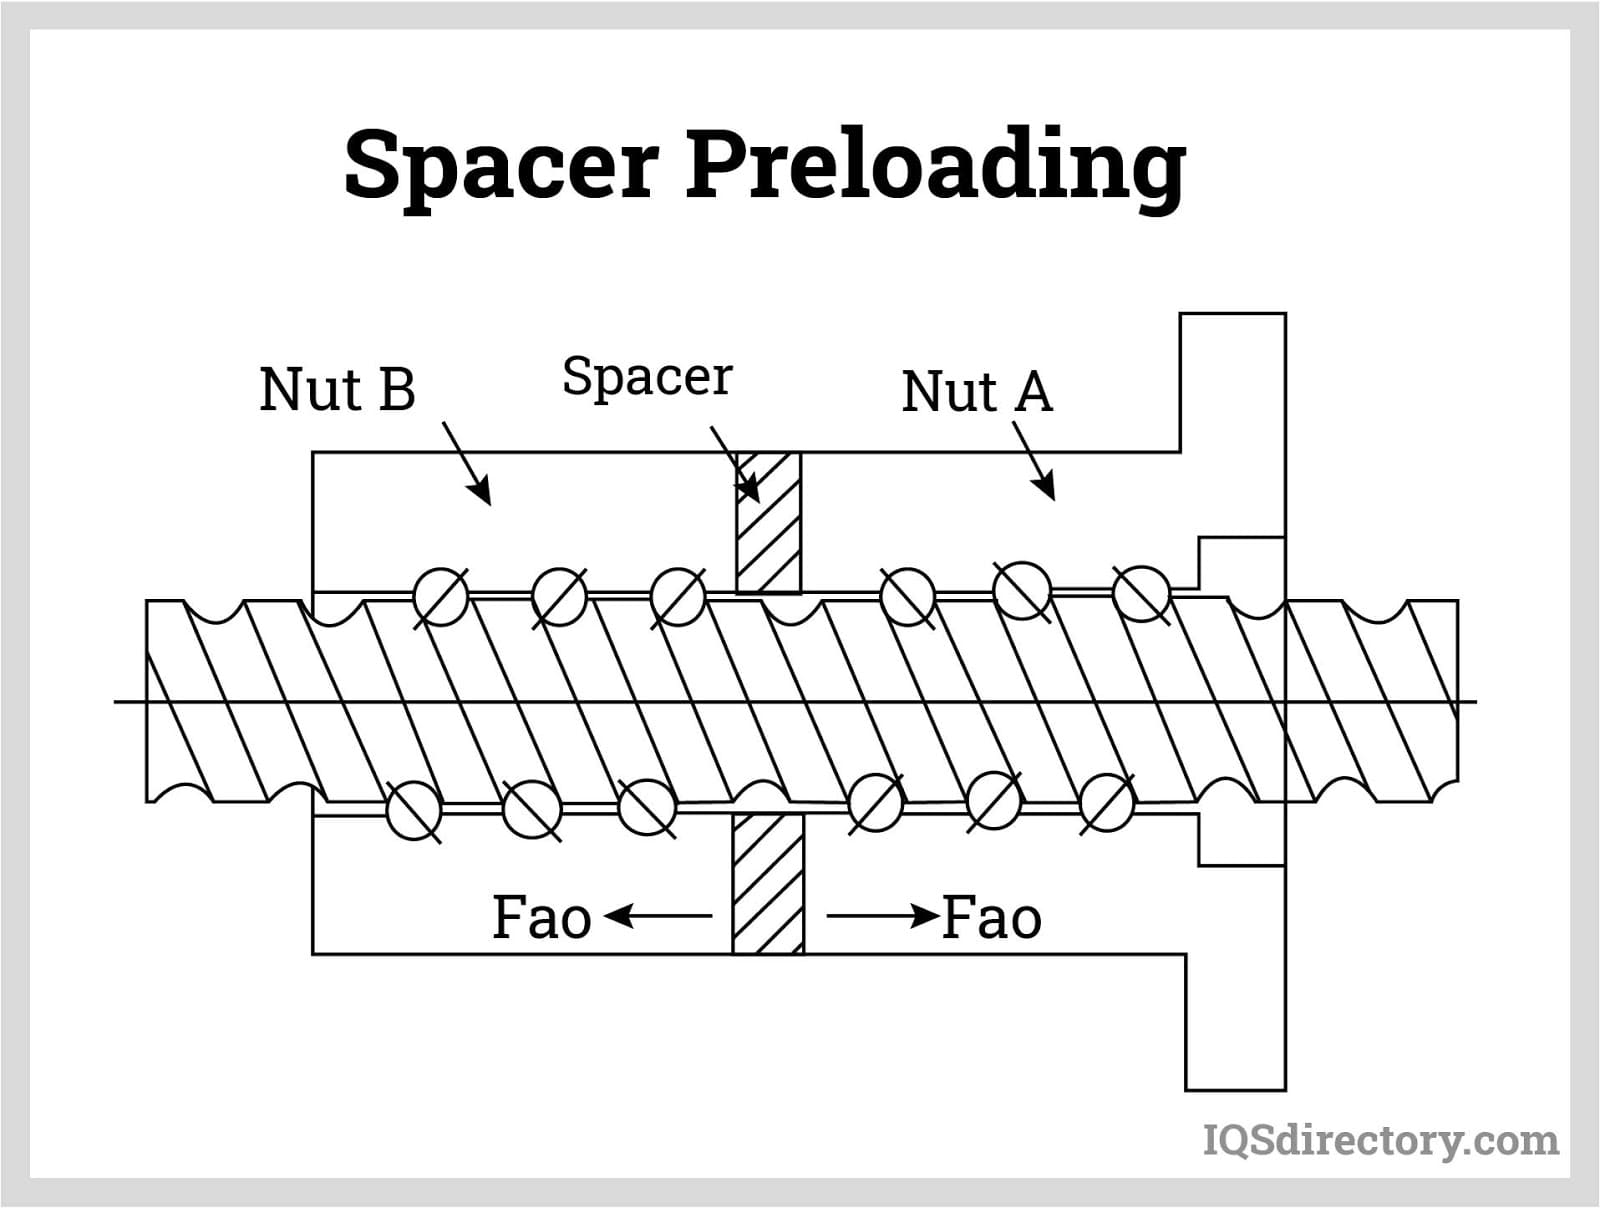 Spacer Preloading